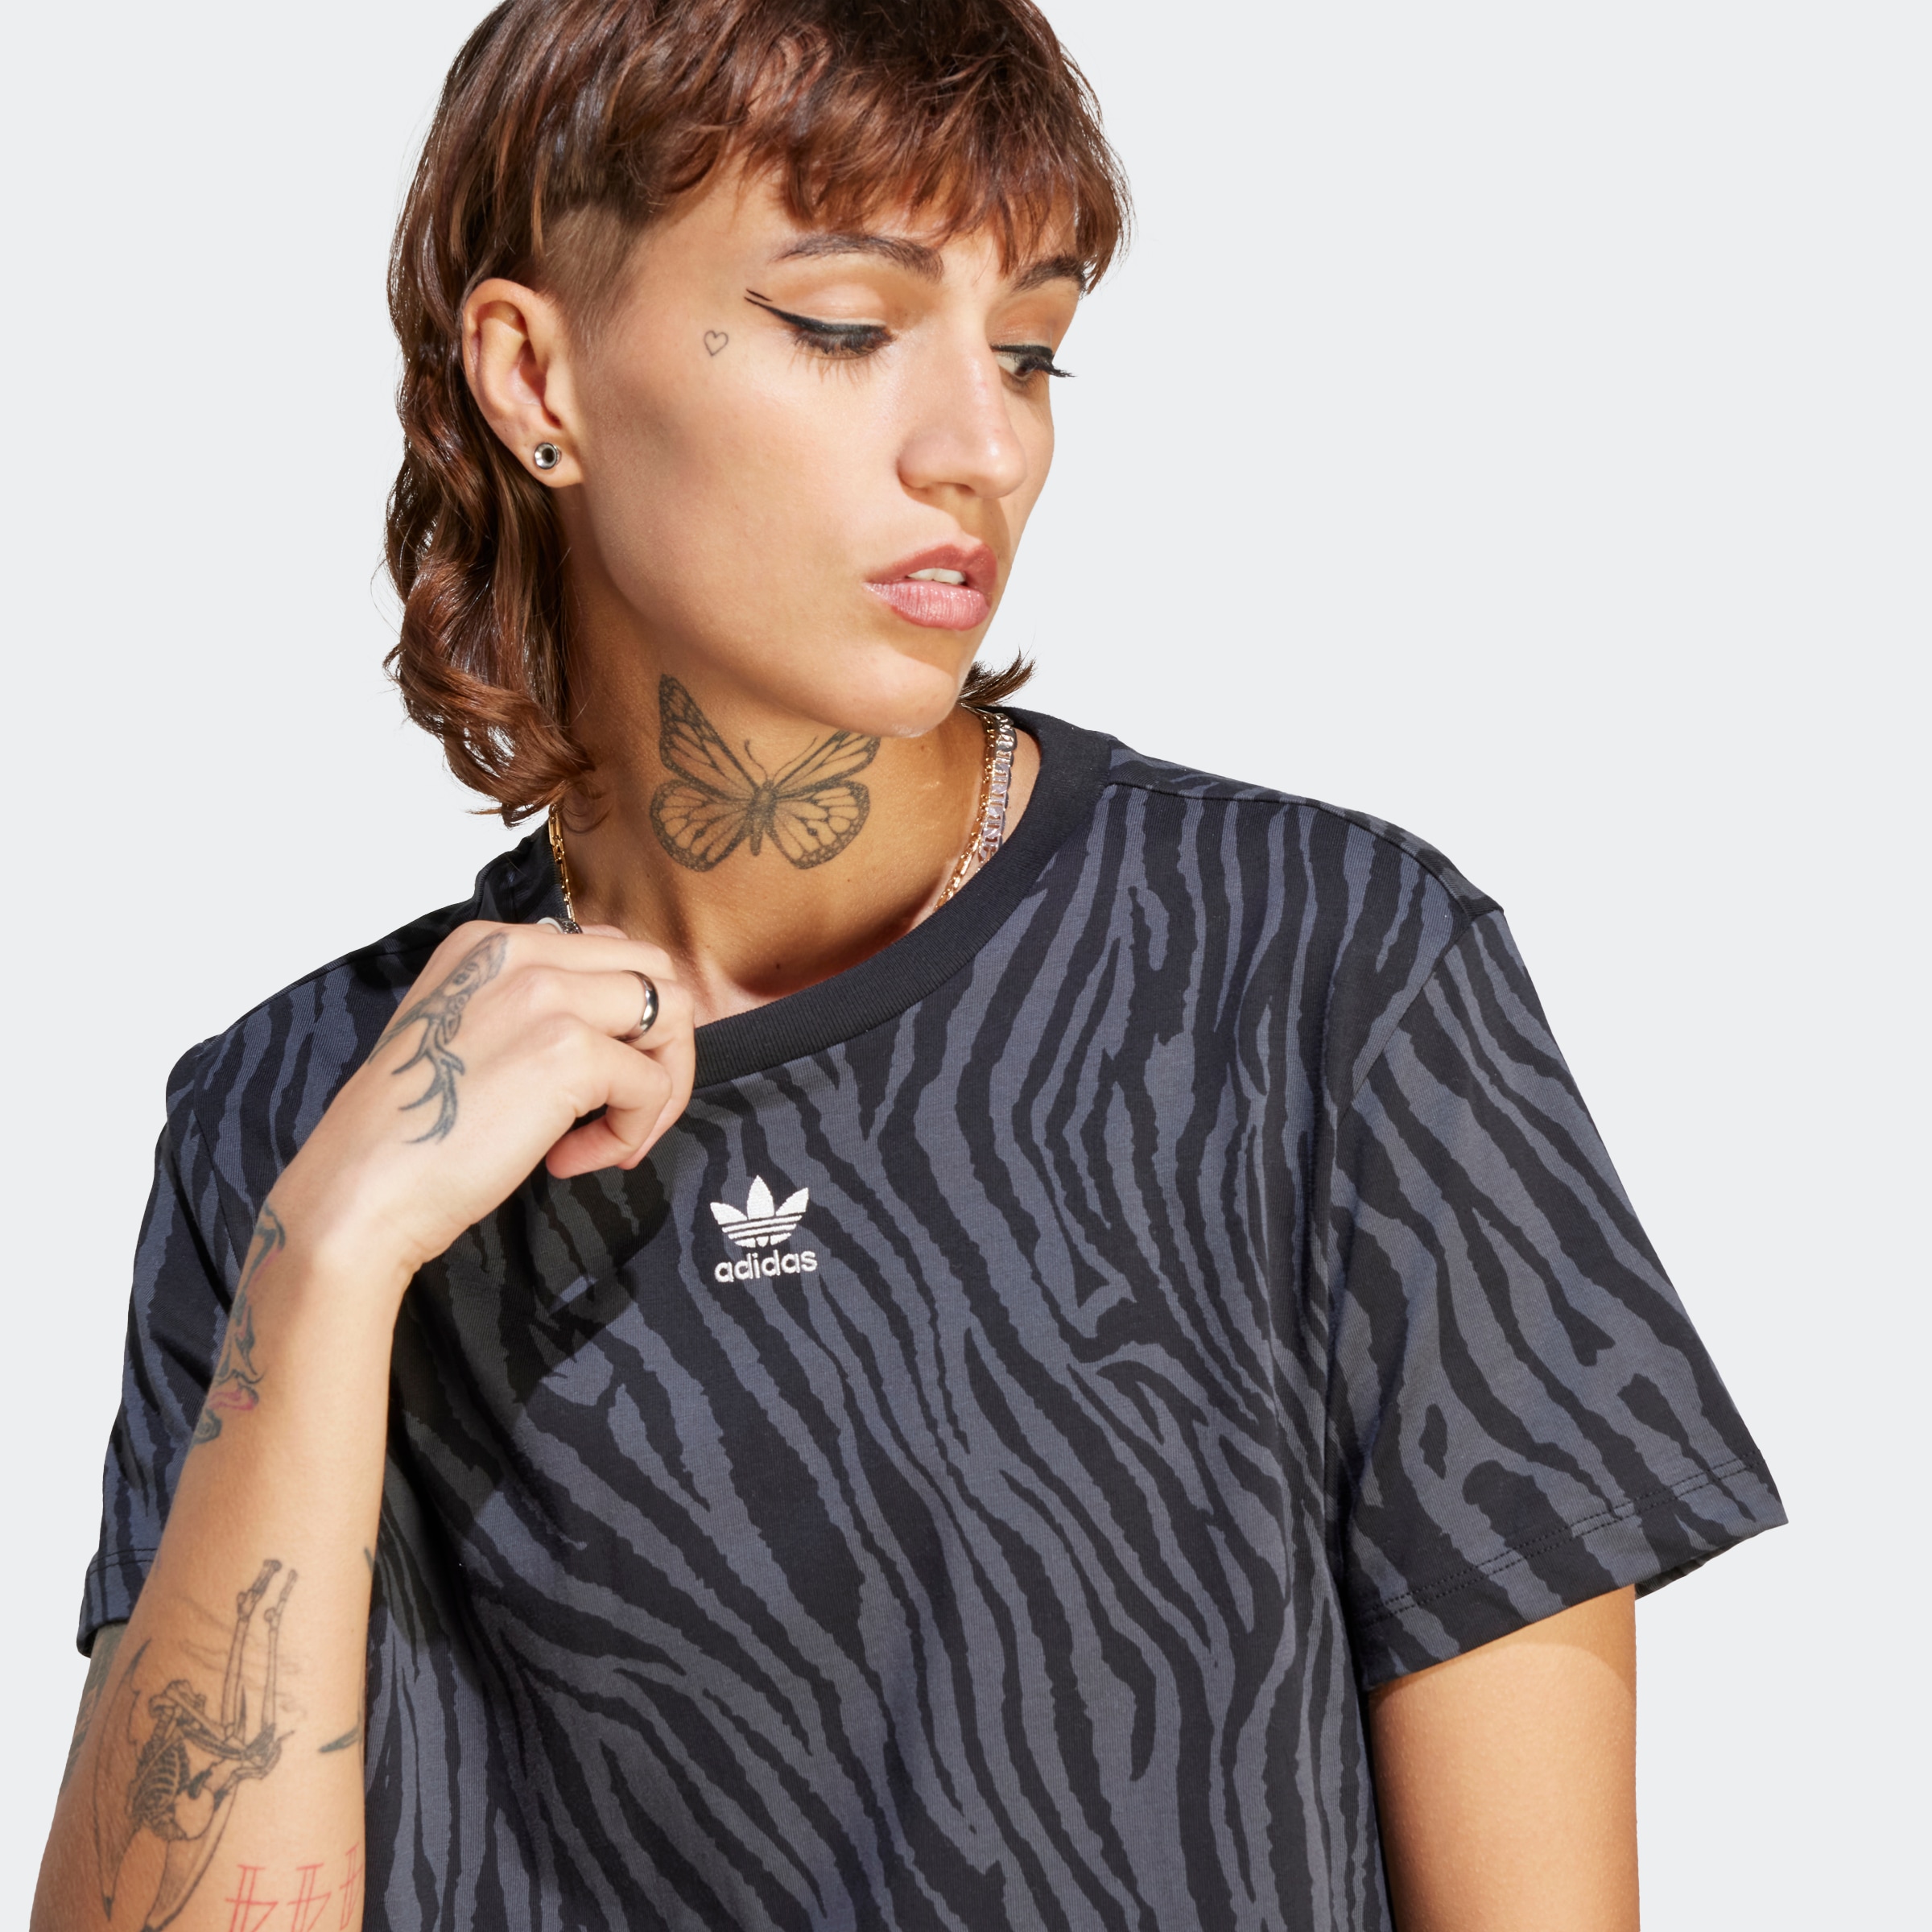 online »ALLOVER Originals T-Shirt | adidas bestellen ANIMAL PRINT ZEBRA ESSENTIALS« BAUR